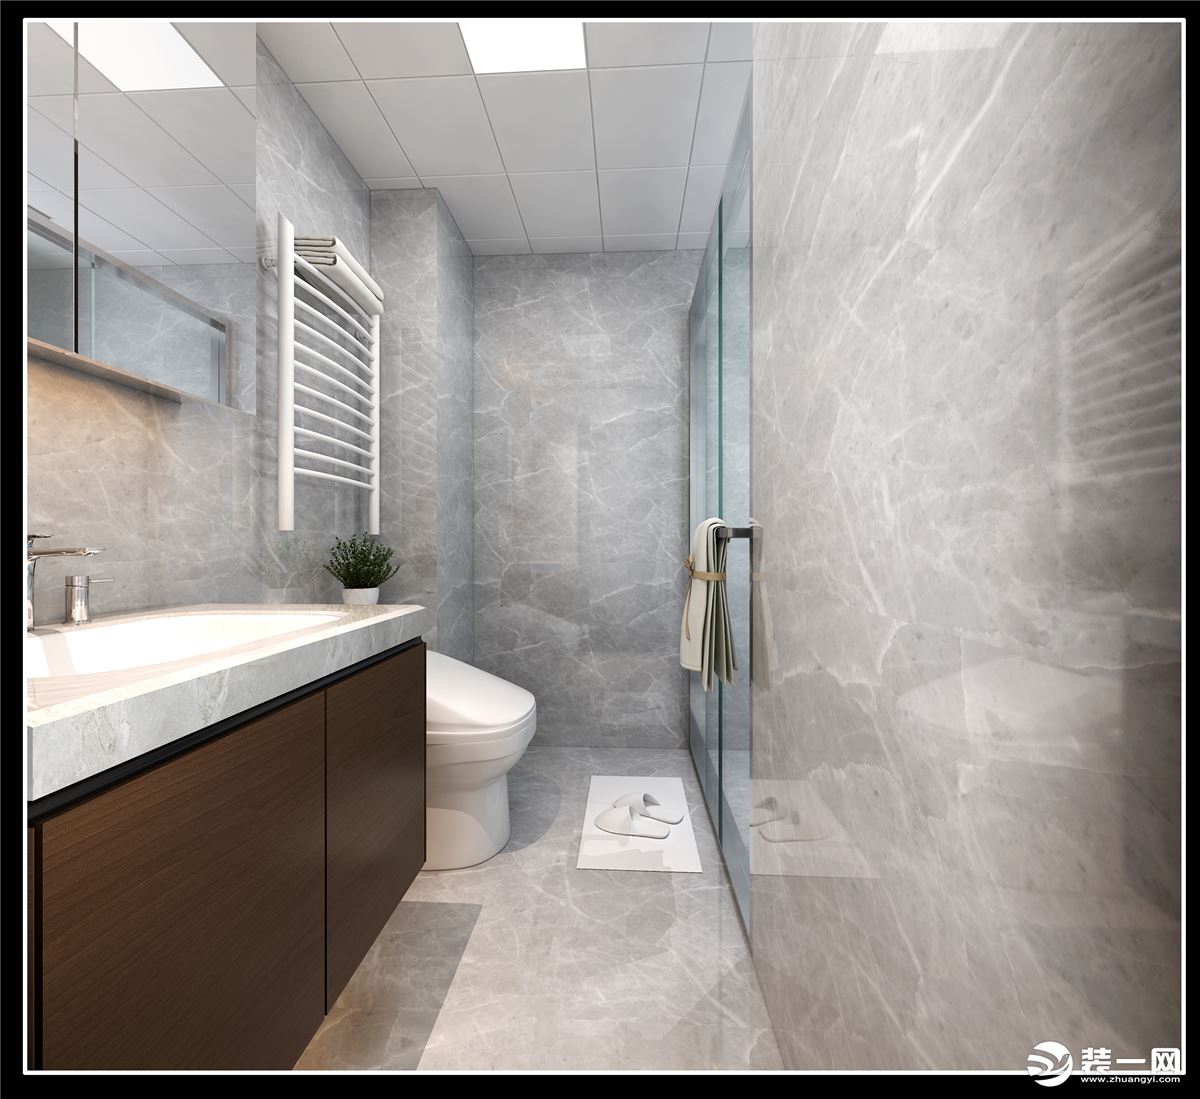 通铺的白色大理石瓷砖，让卫生间更显简约风范。一面圆形镜子还做了藏光的